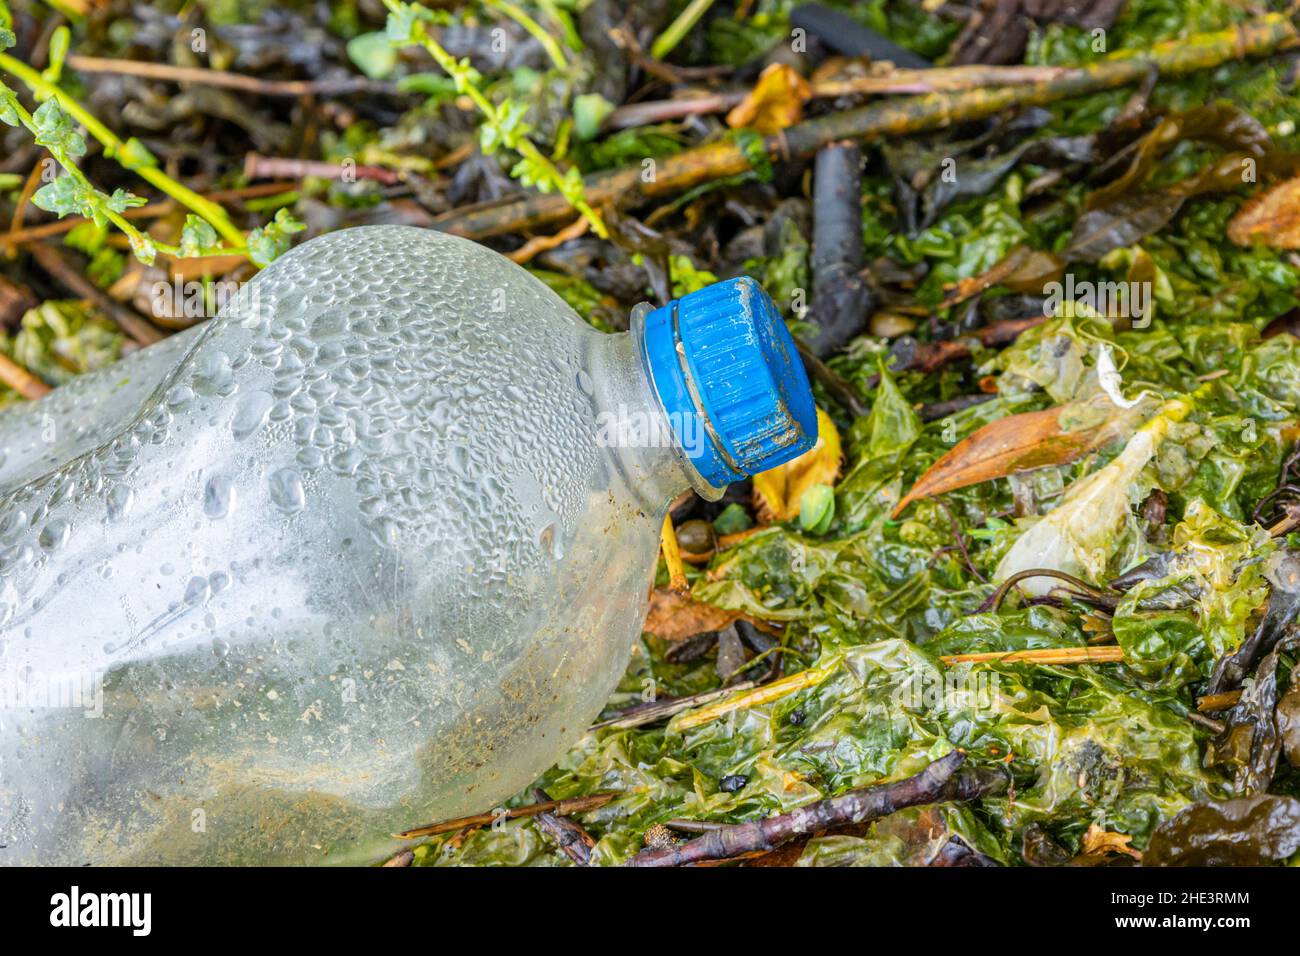 Crisis de contaminación del plástico, daños ambientales en la reserva natural del Reino Unido Foto de stock